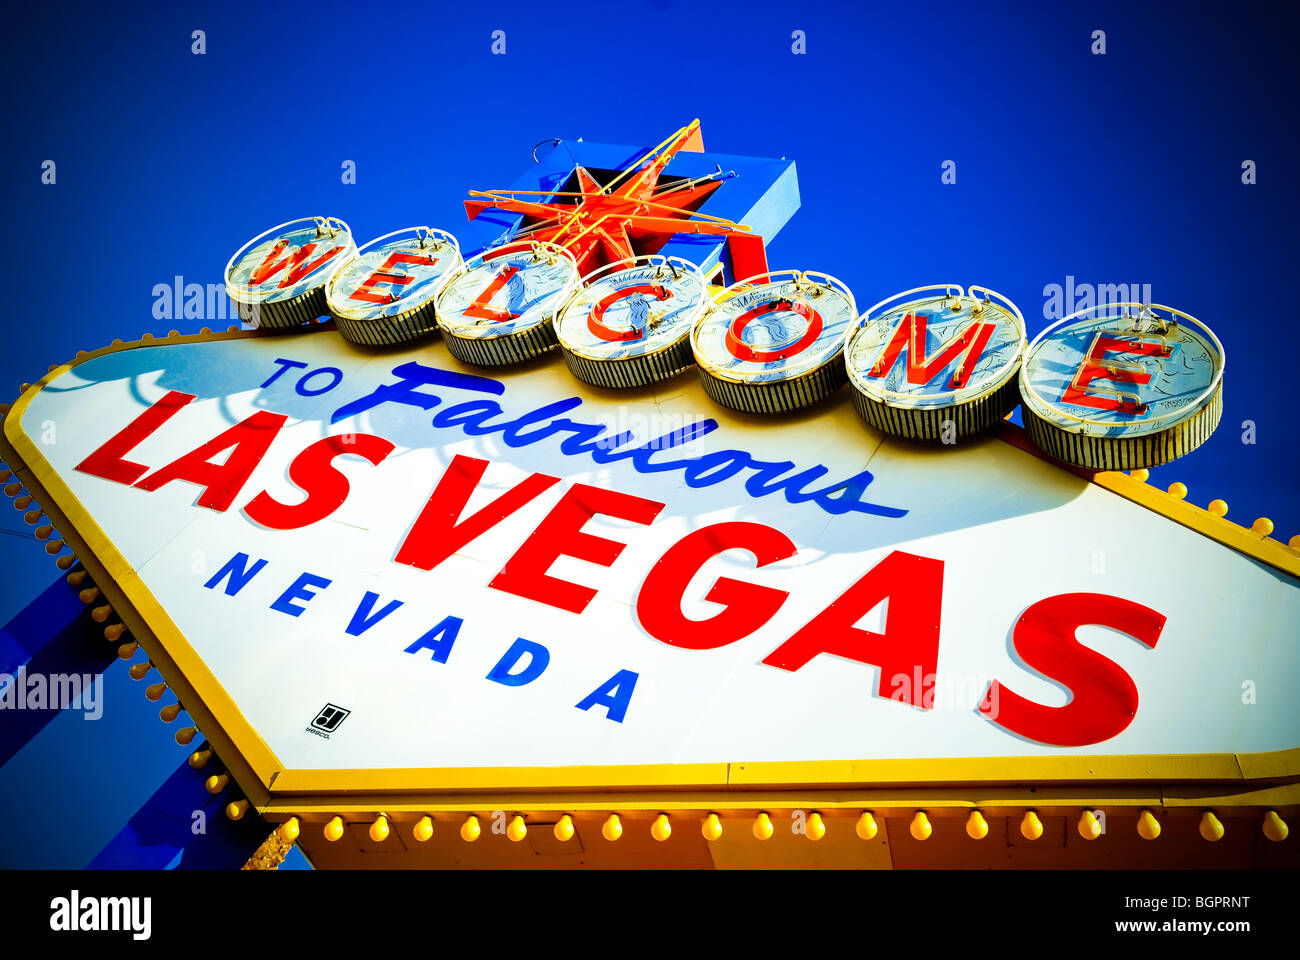 Das berühmte "Welcome to Fabulous Las Vegas" Schild ist ein vertrauter und allgegenwärtige Wahrzeichen in Las Vegas, Nevada. Stockfoto